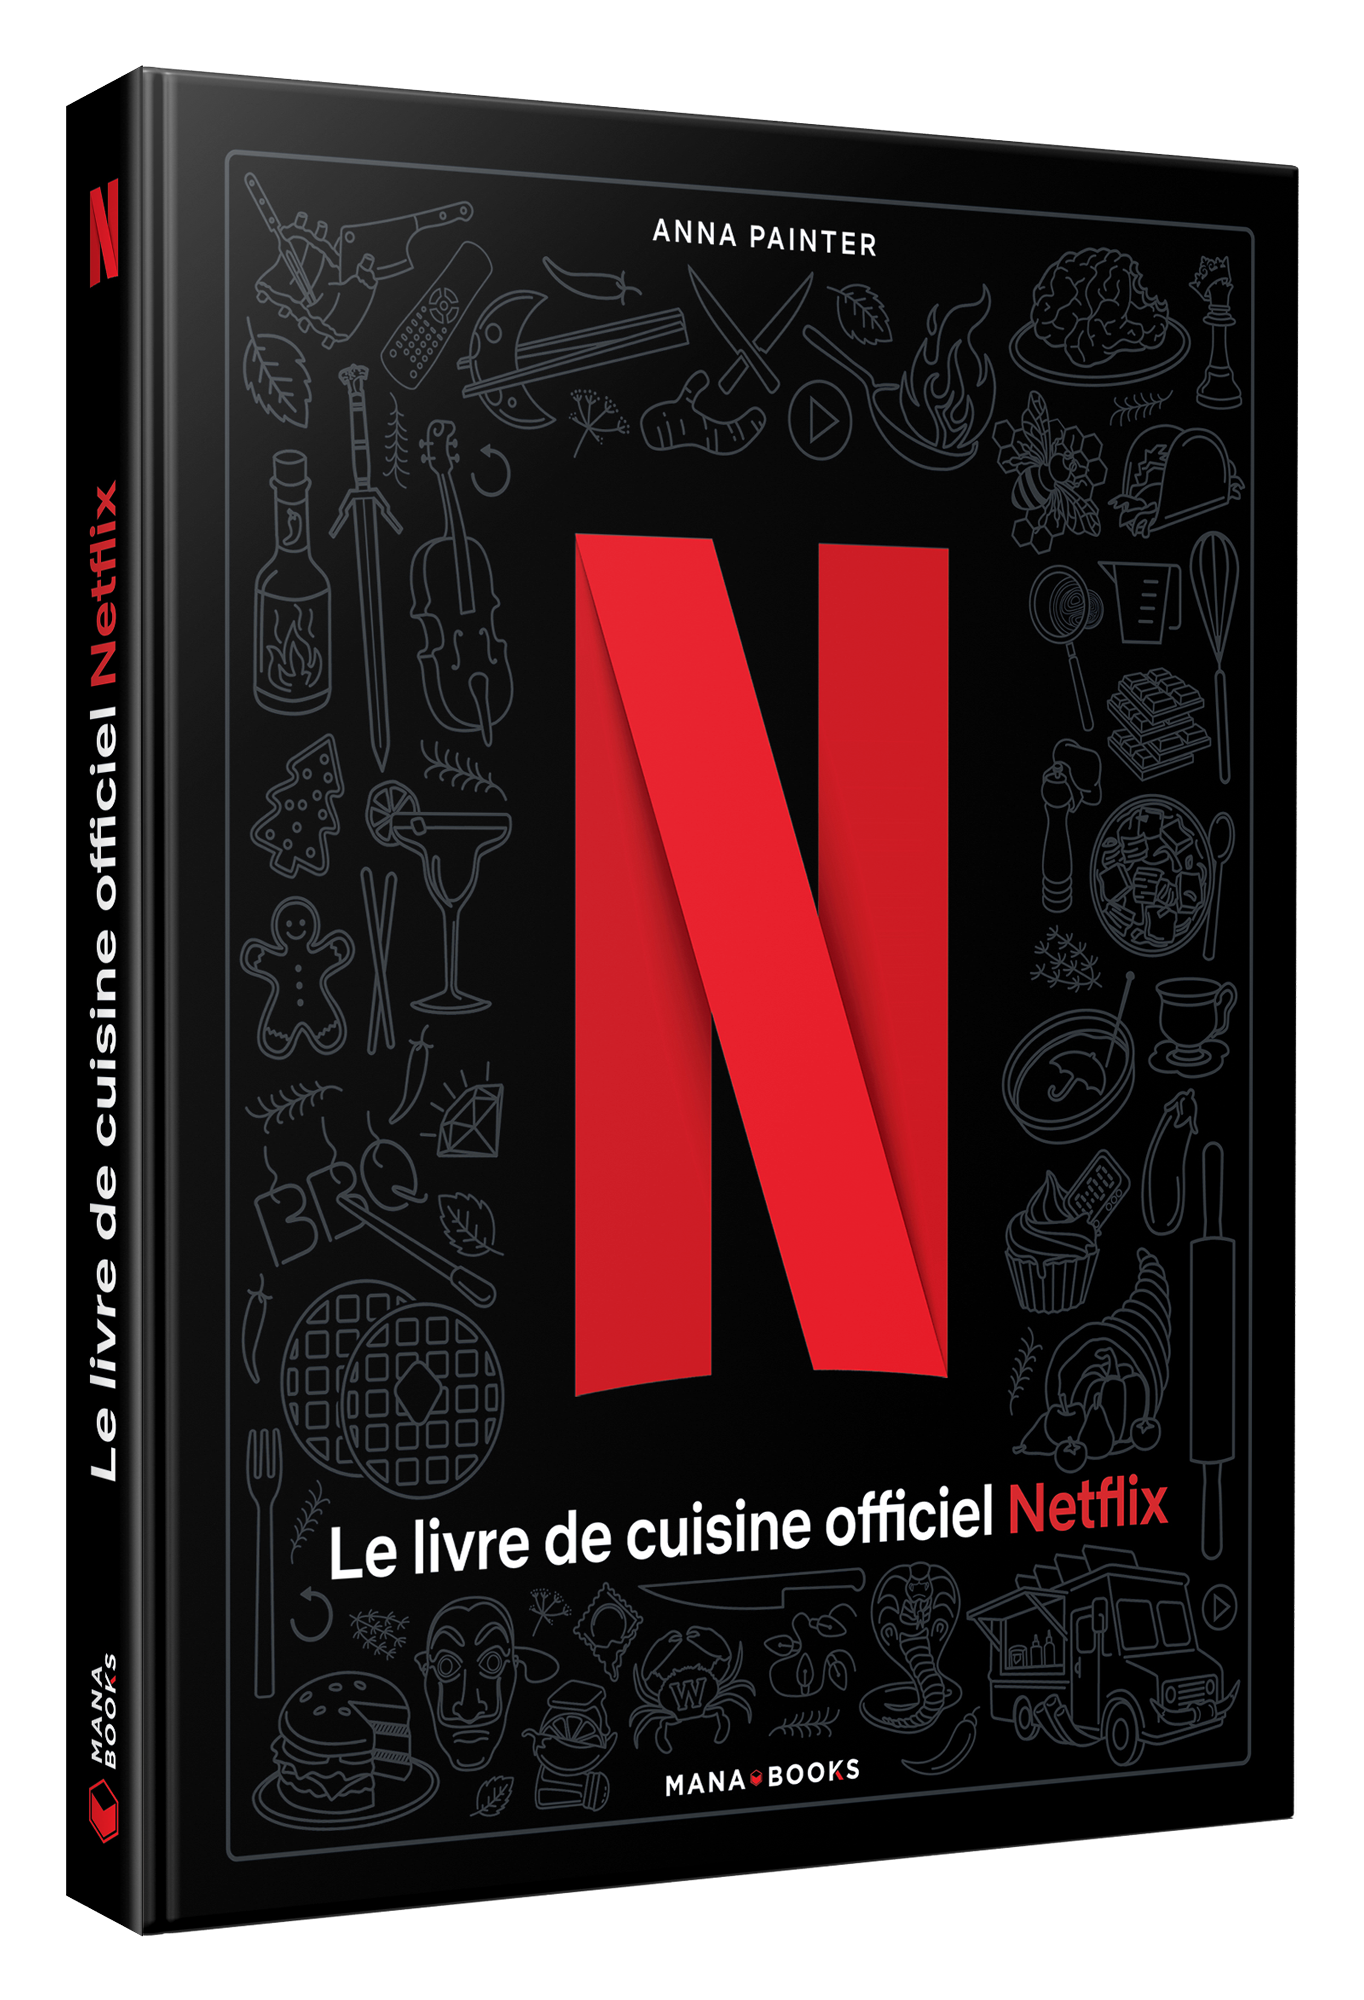 LIVRE DE CUISINE Le livre de cuisine officiel Netflix - Mana Books